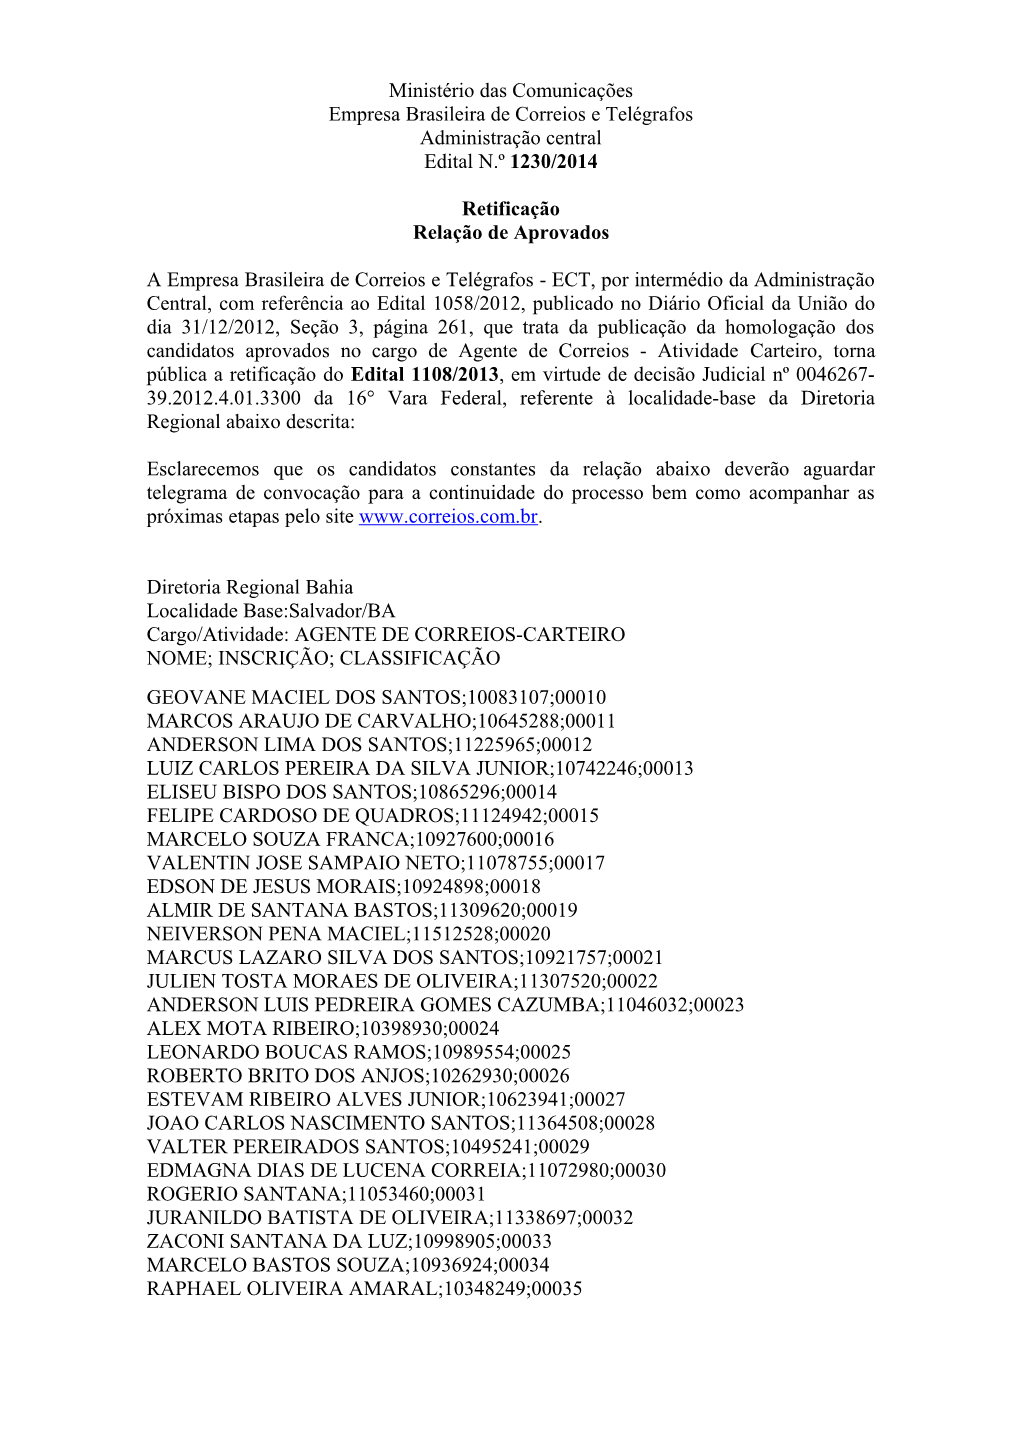 Ministério Das Comunicações Empresa Brasileira De Correios E Telégrafos Administração Central Edital N.º 1230/2014